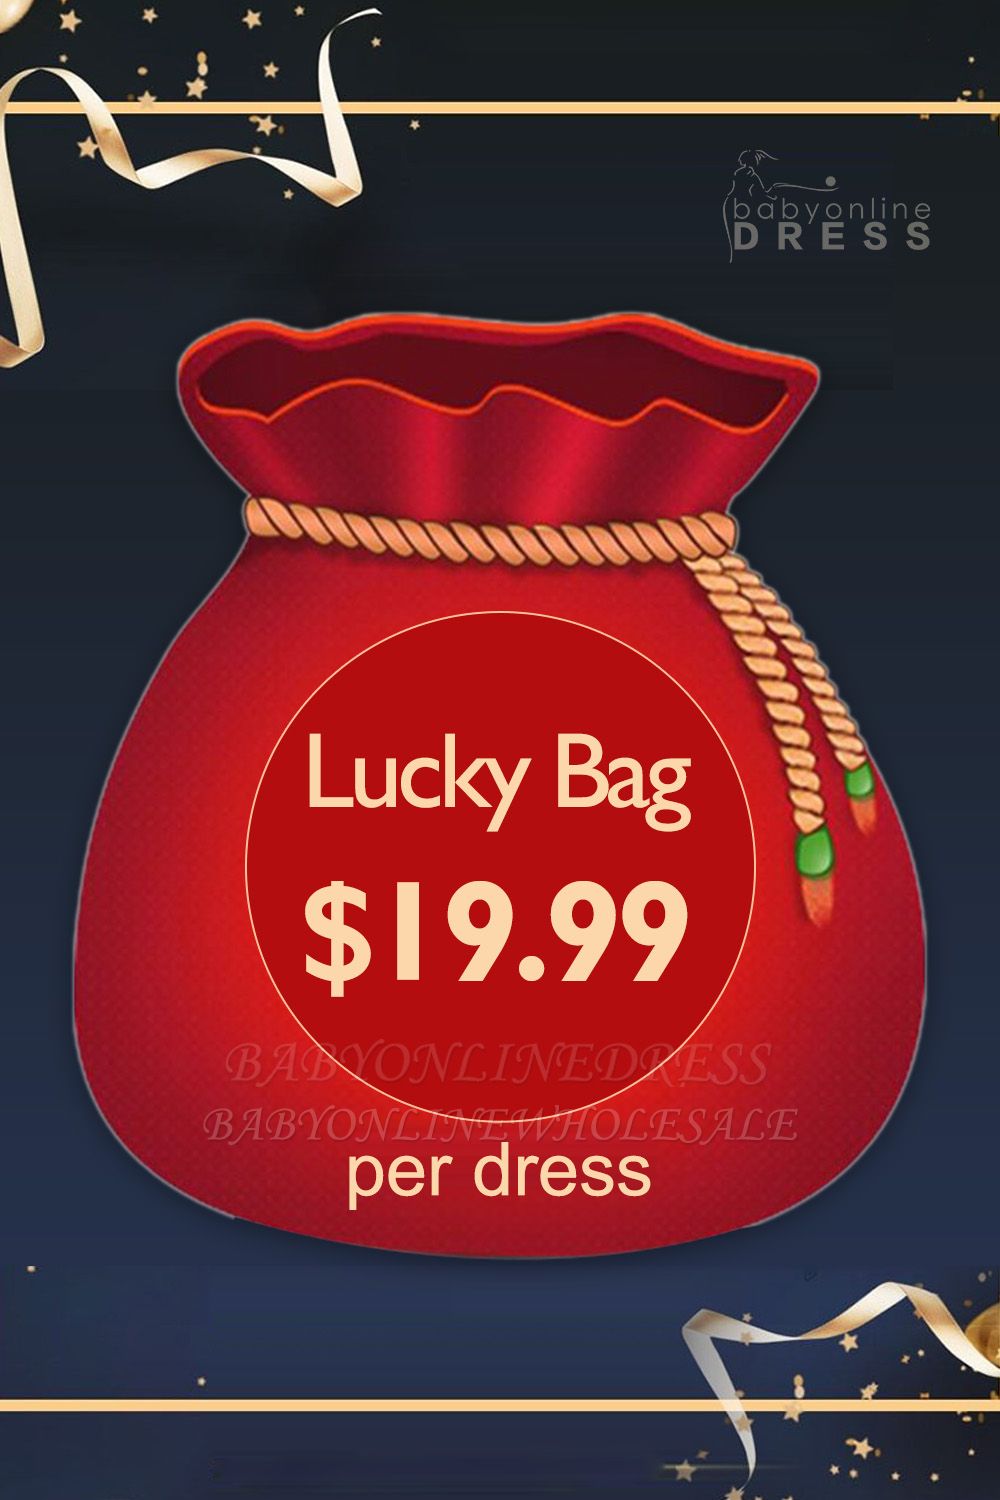 US $ 19,99 para obter Lucky Bag com Random Hot Sale Dress